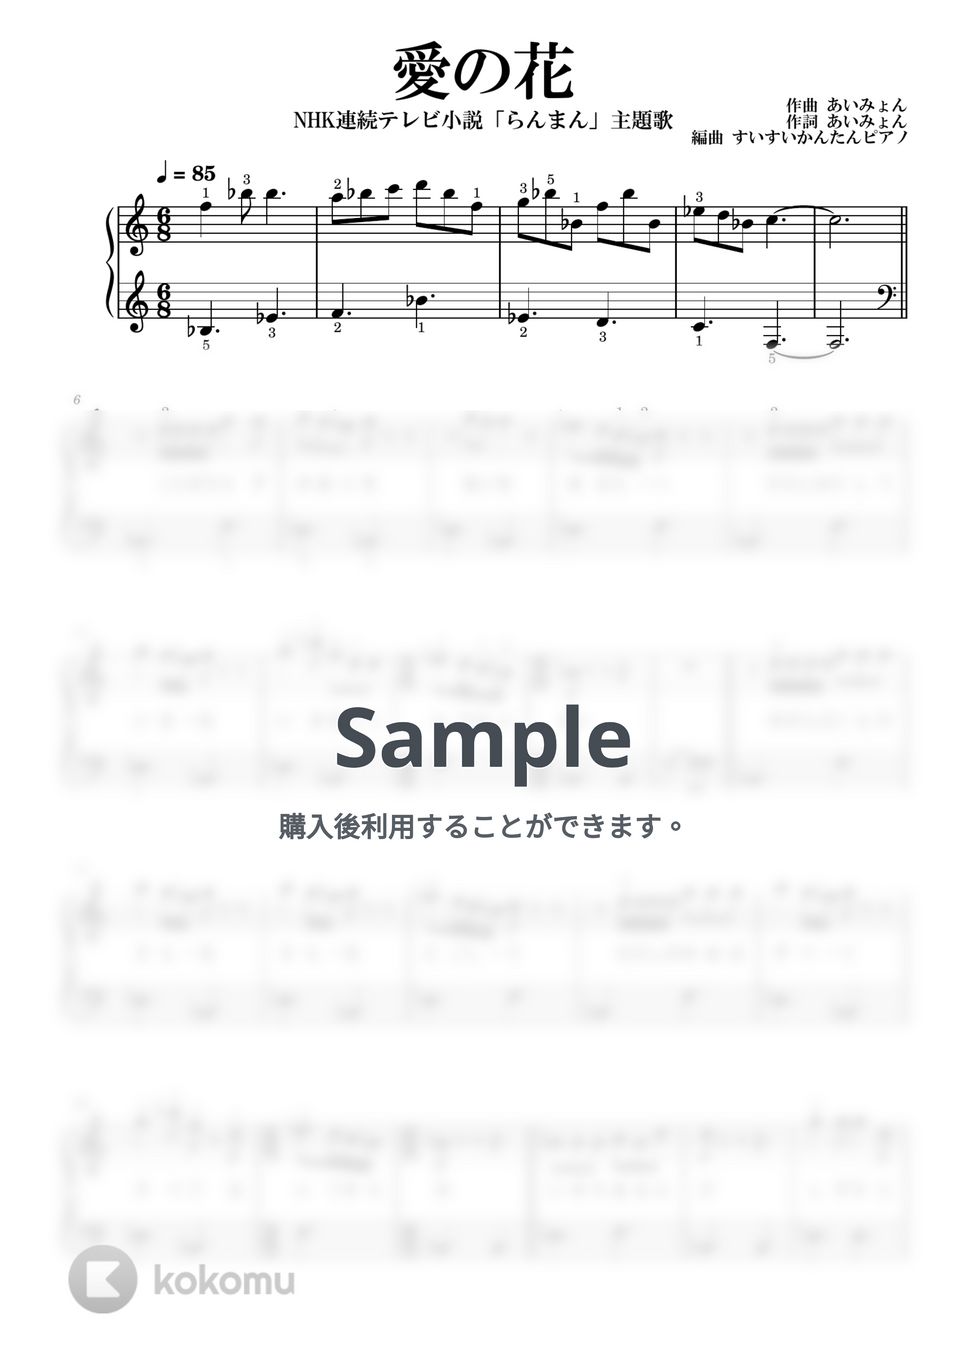 あいみょん - 愛の花 (もっと簡単に弾ける) by すいすいかんたんピアノ